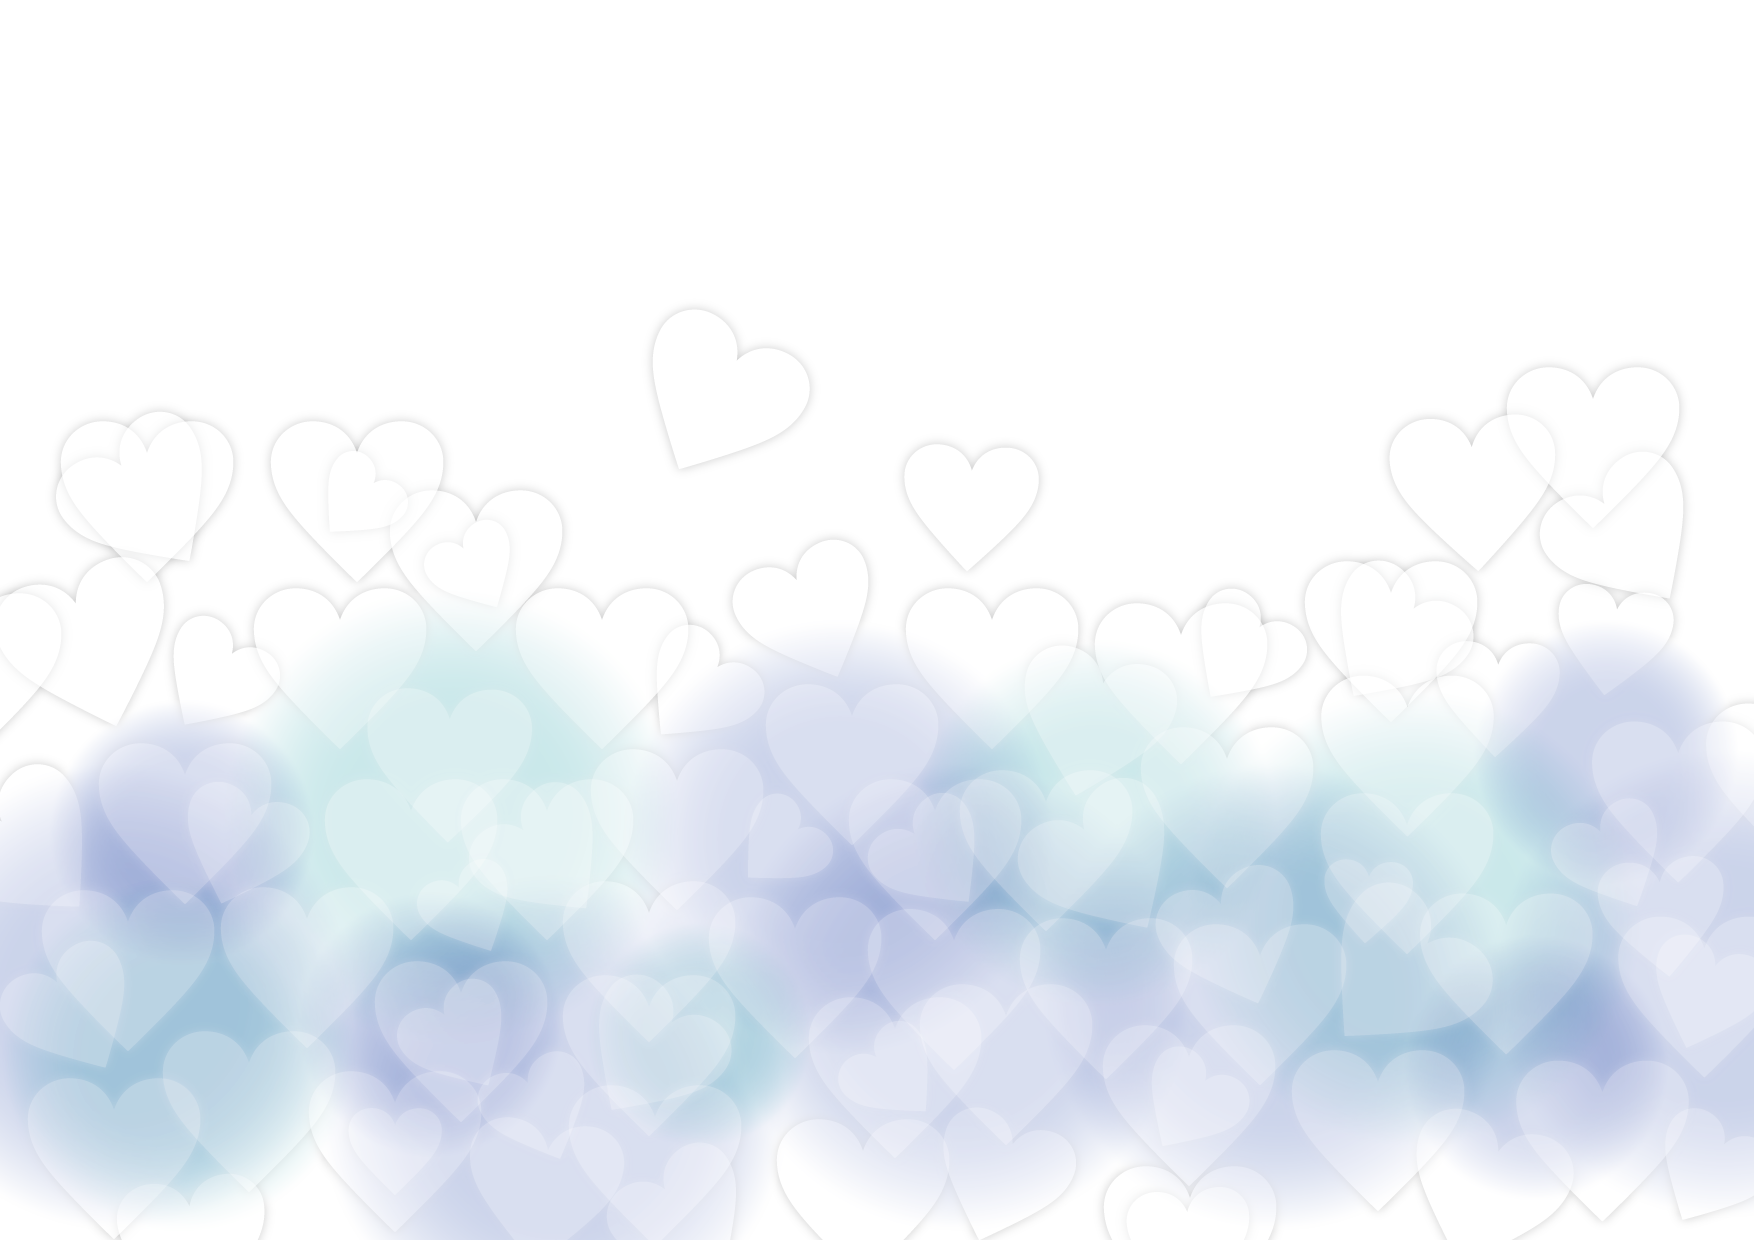 可愛いイラスト無料 バレンタイン 背景 やわらか ブルー ハート Free Illustration Valentine Background Soft Blue Heart 公式 イラスト素材サイト イラストダウンロード